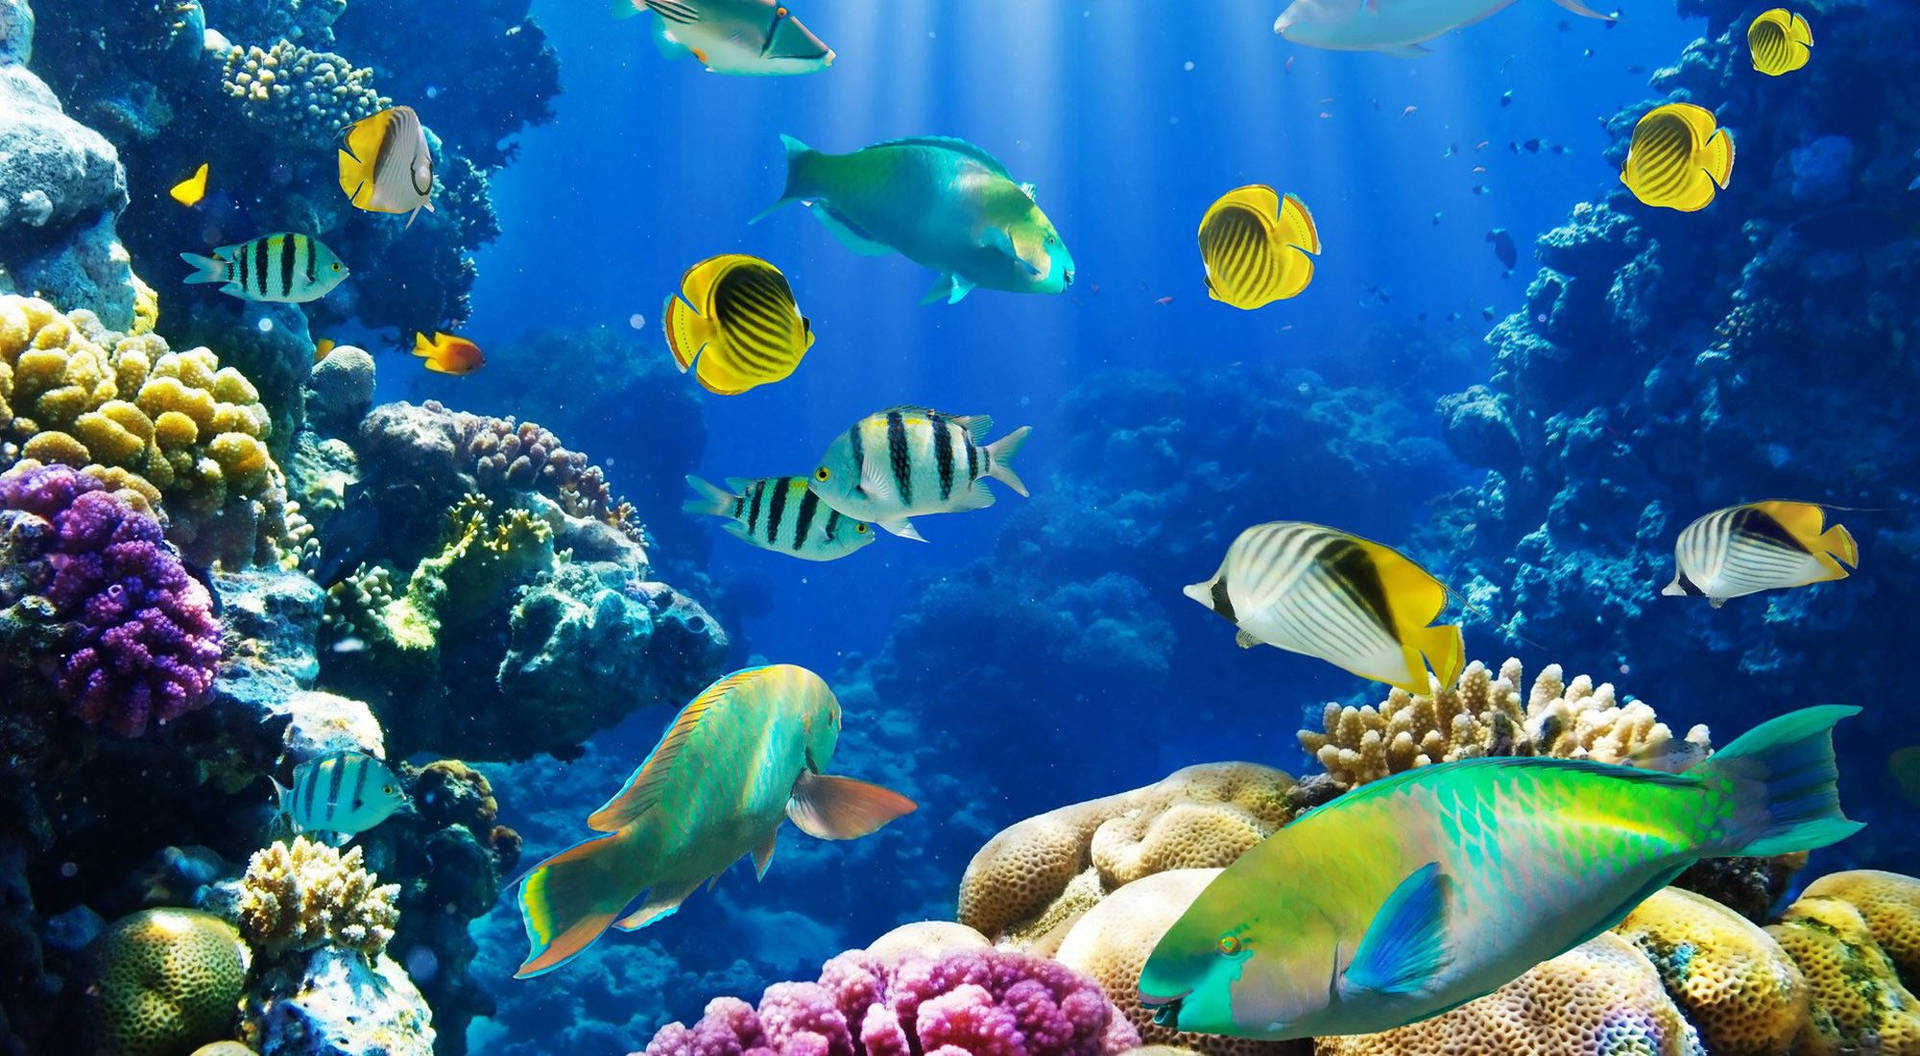 Hdfische, Die In Der Nähe Von Korallenriffen Schwimmen Wallpaper